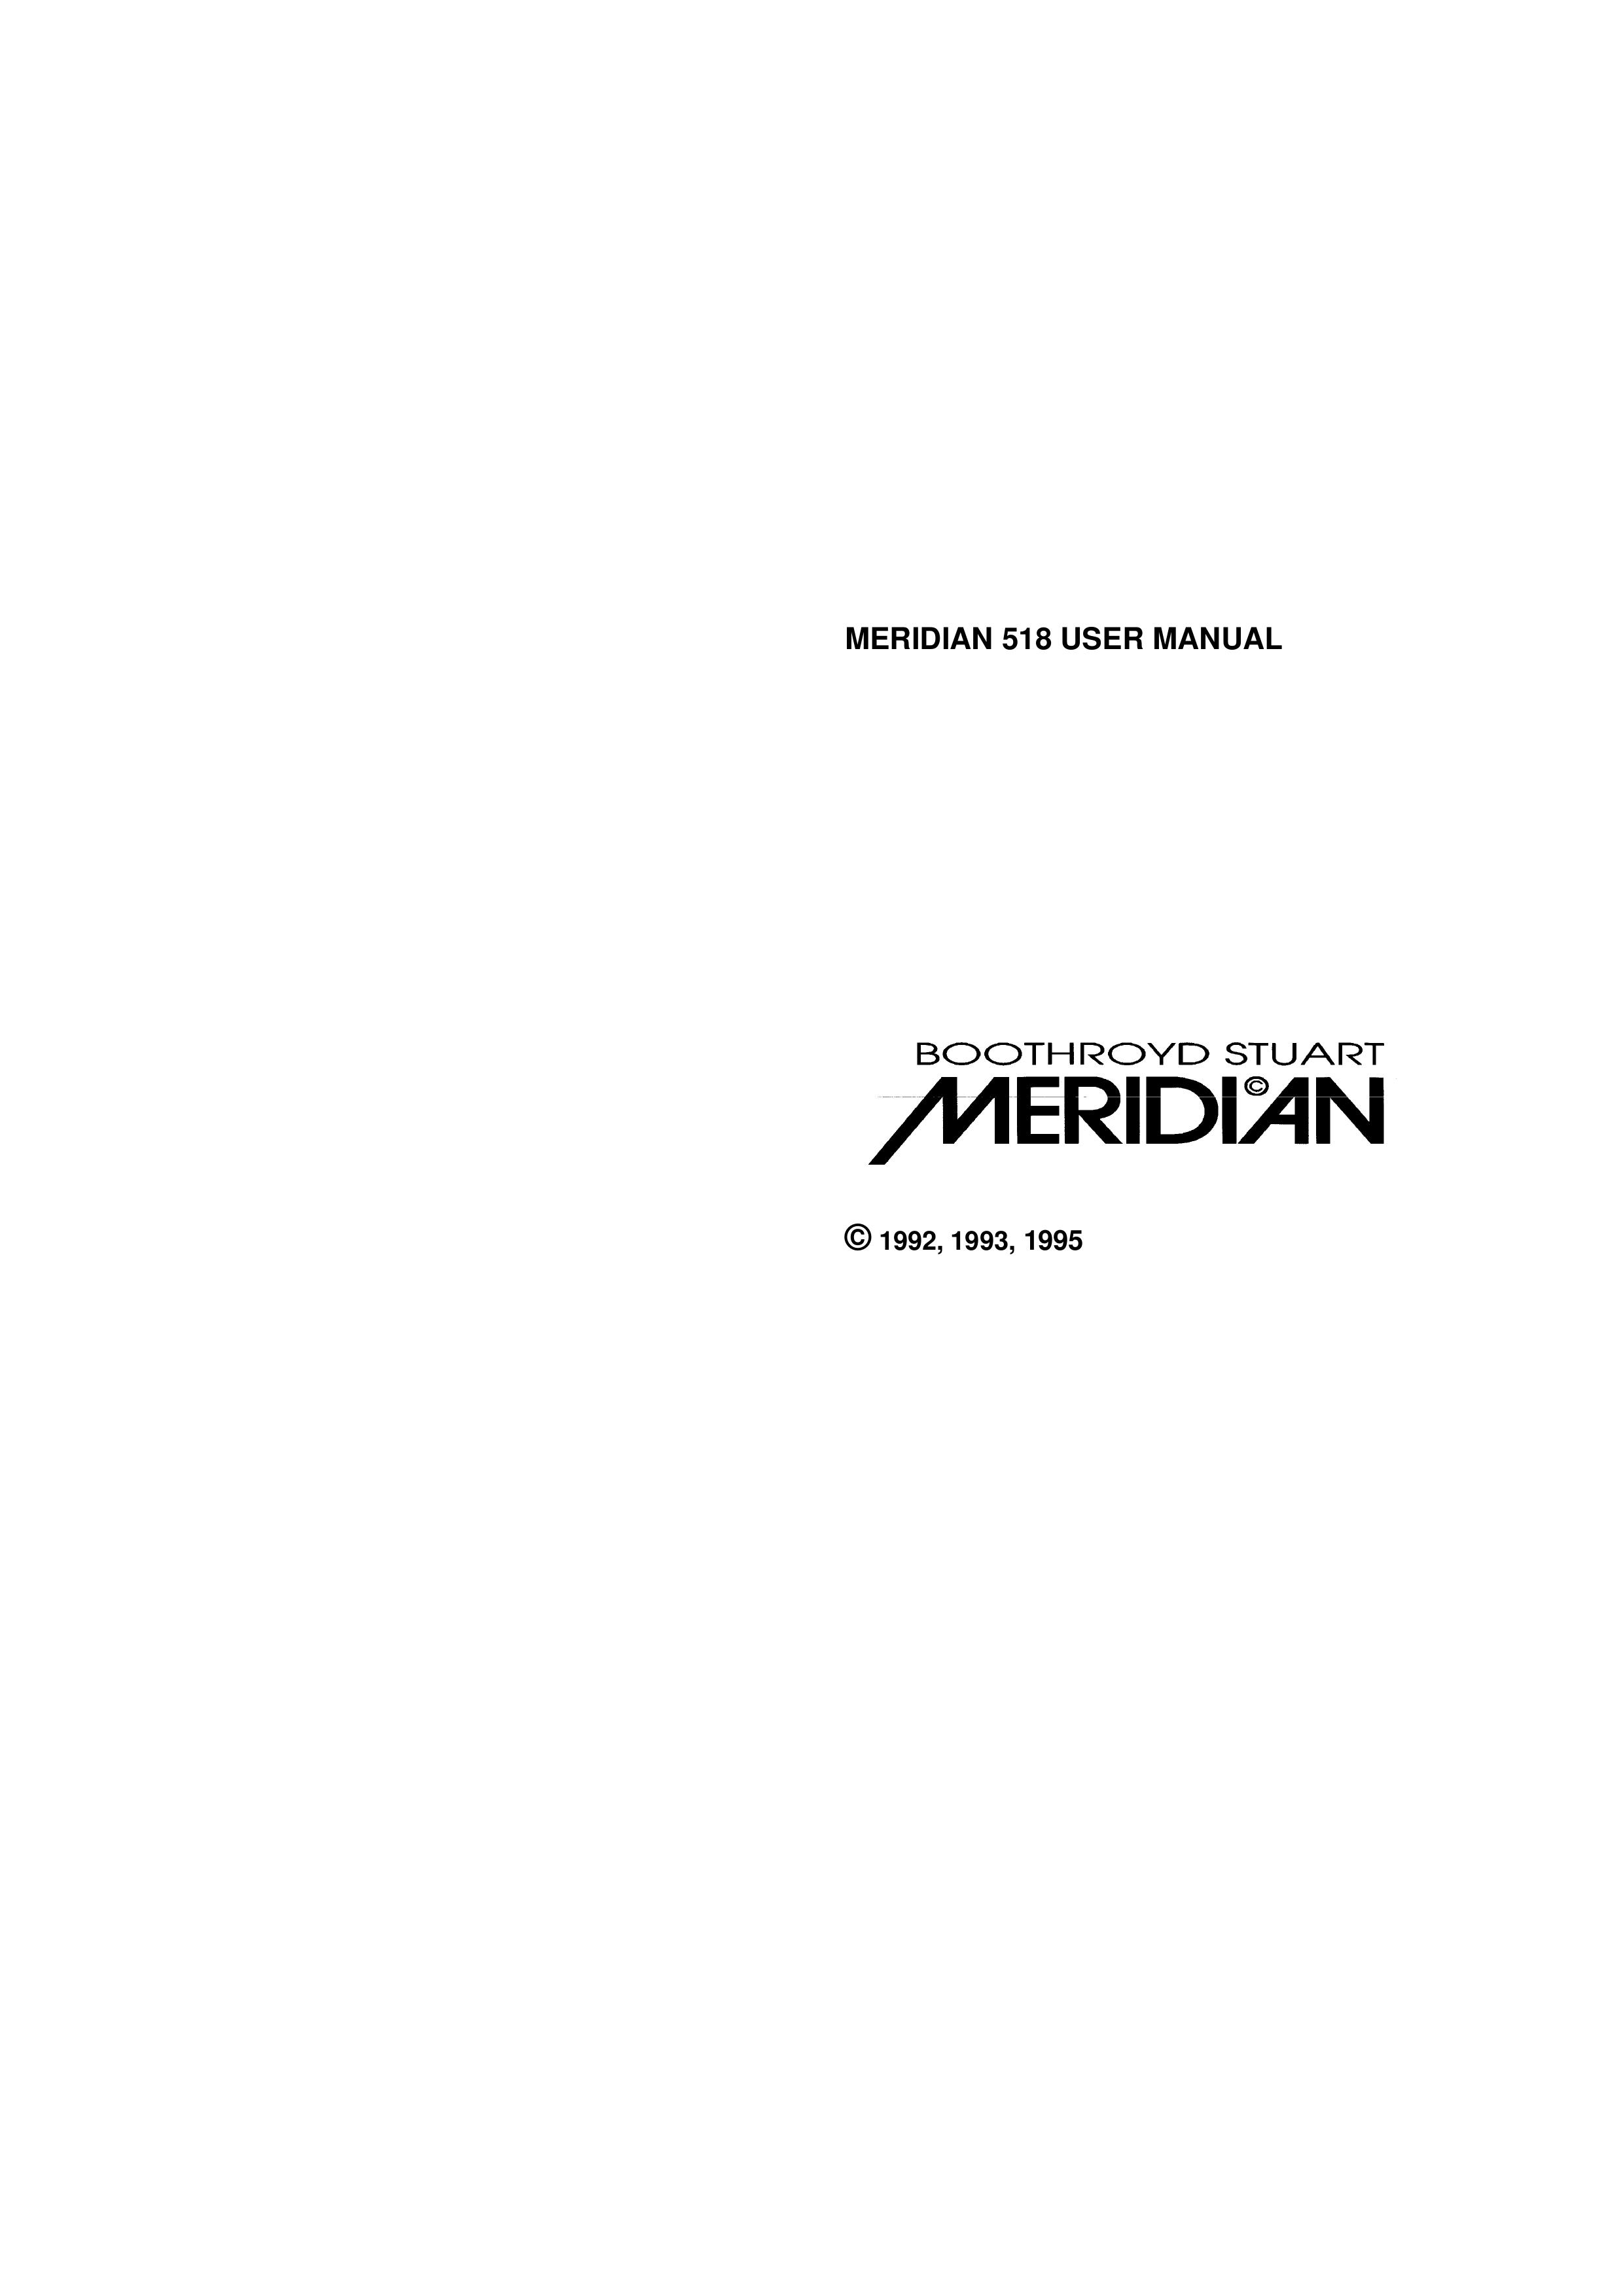 Meridian America Meridian 518 DJ Equipment User Manual